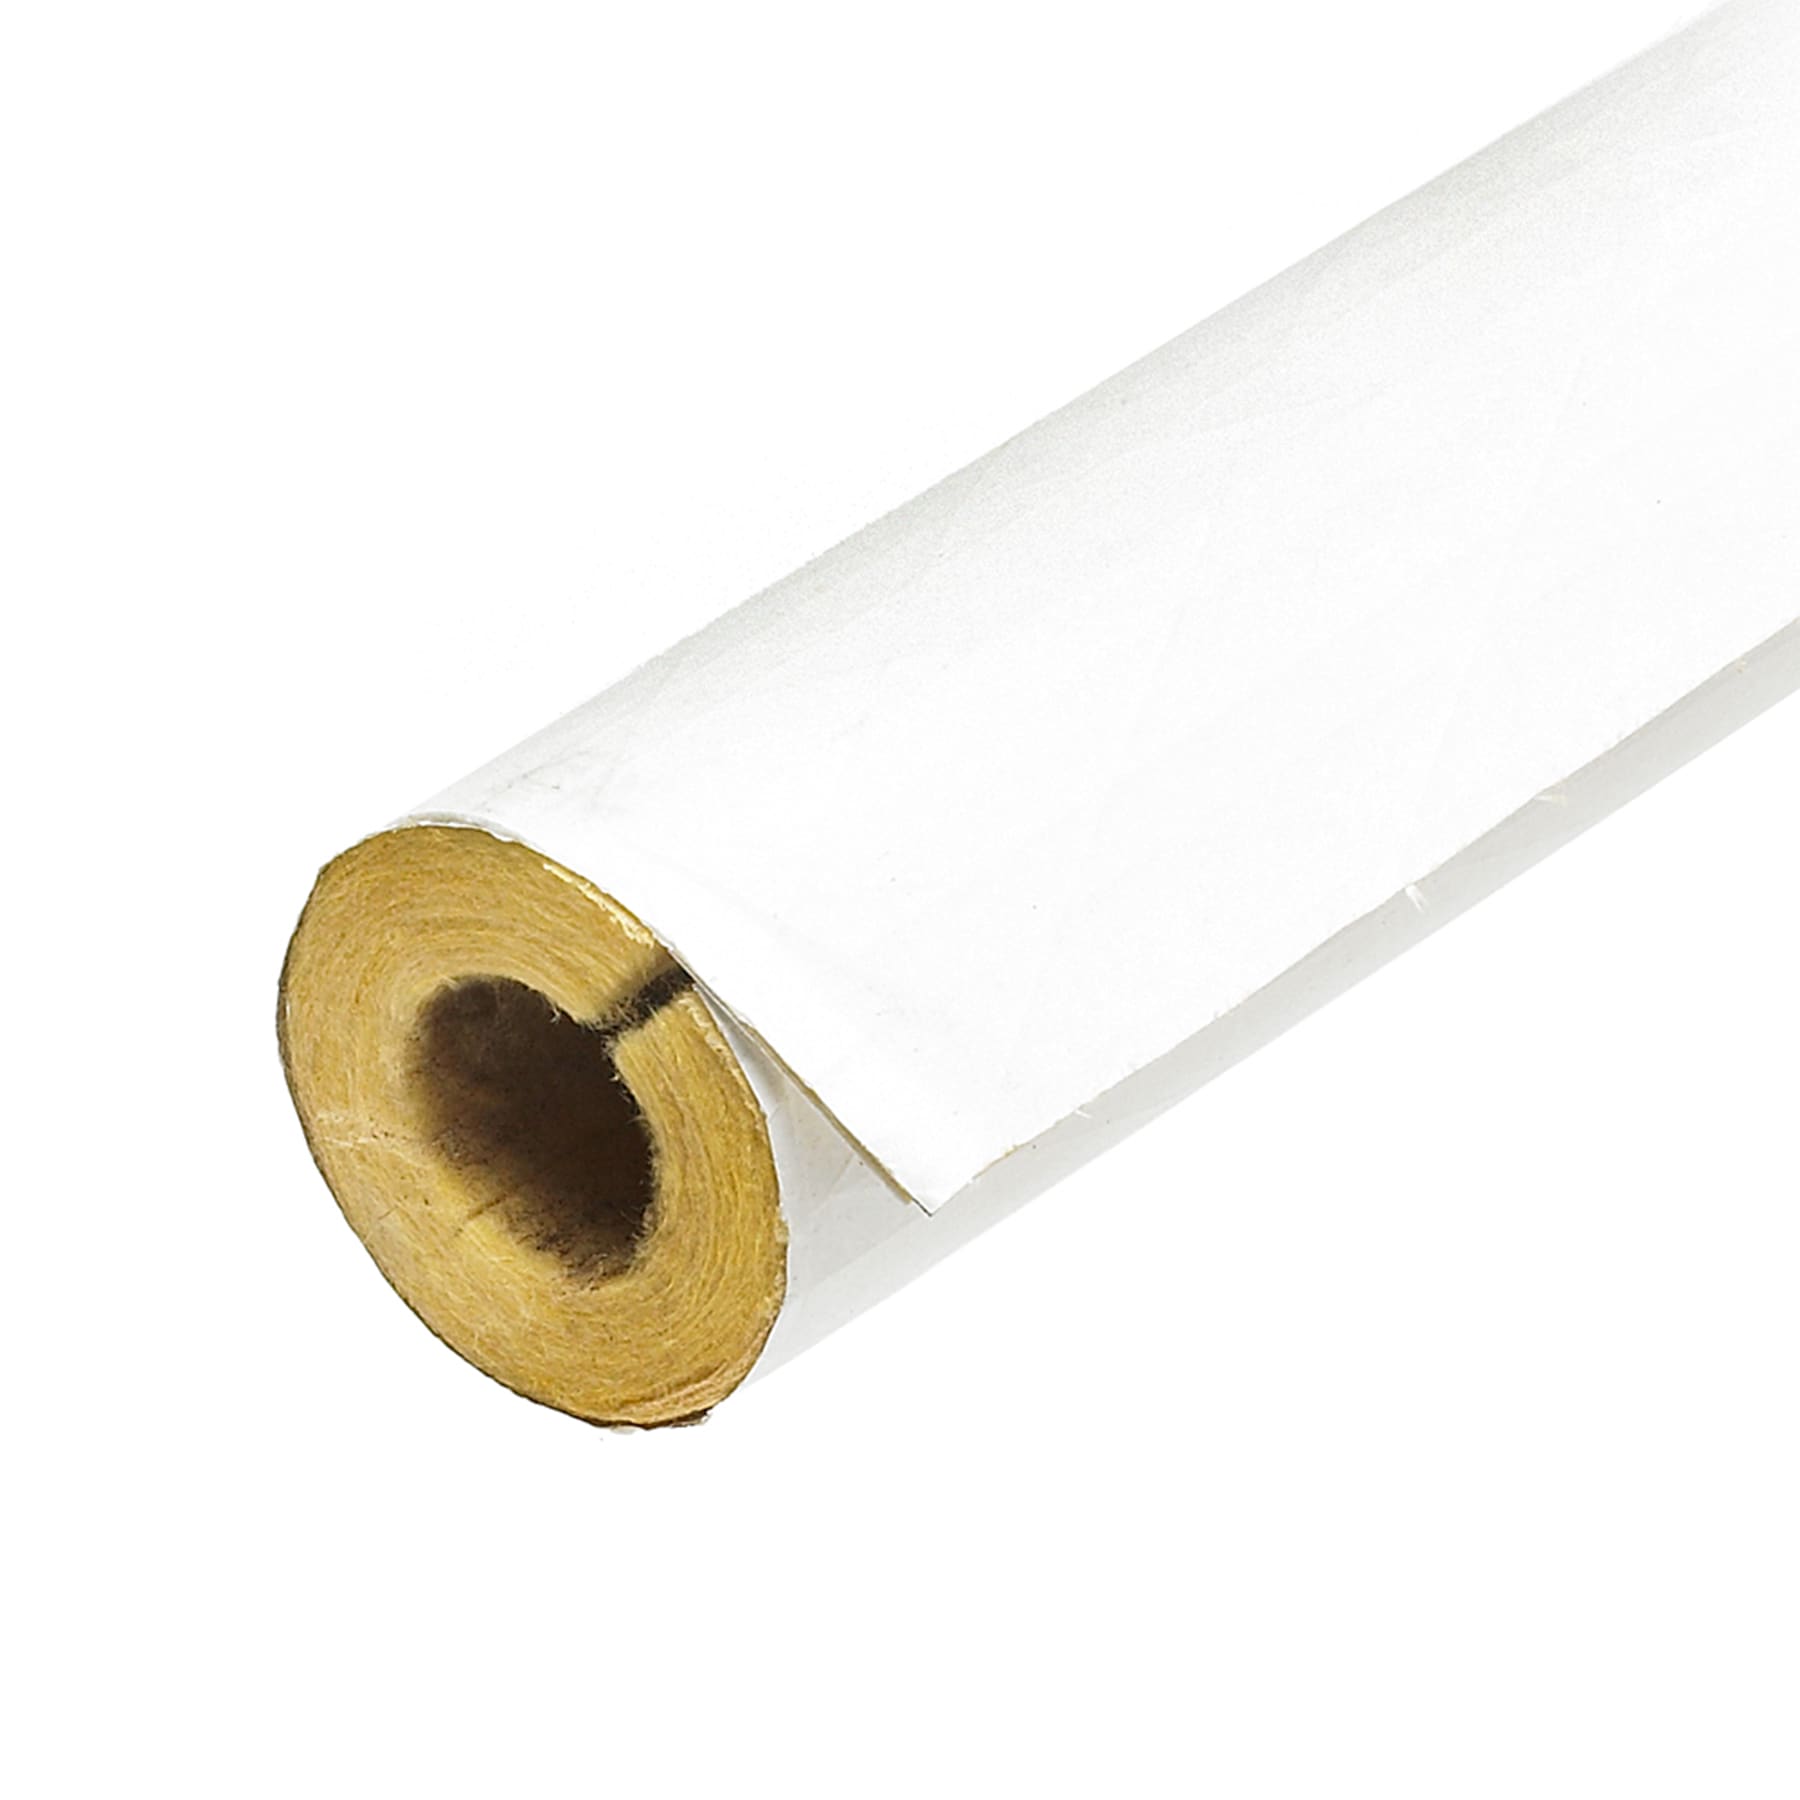 Orbit 2 x 50' Metal Pipe or Conduit Wrapping Tape, Water Pipe Sealing  Taping